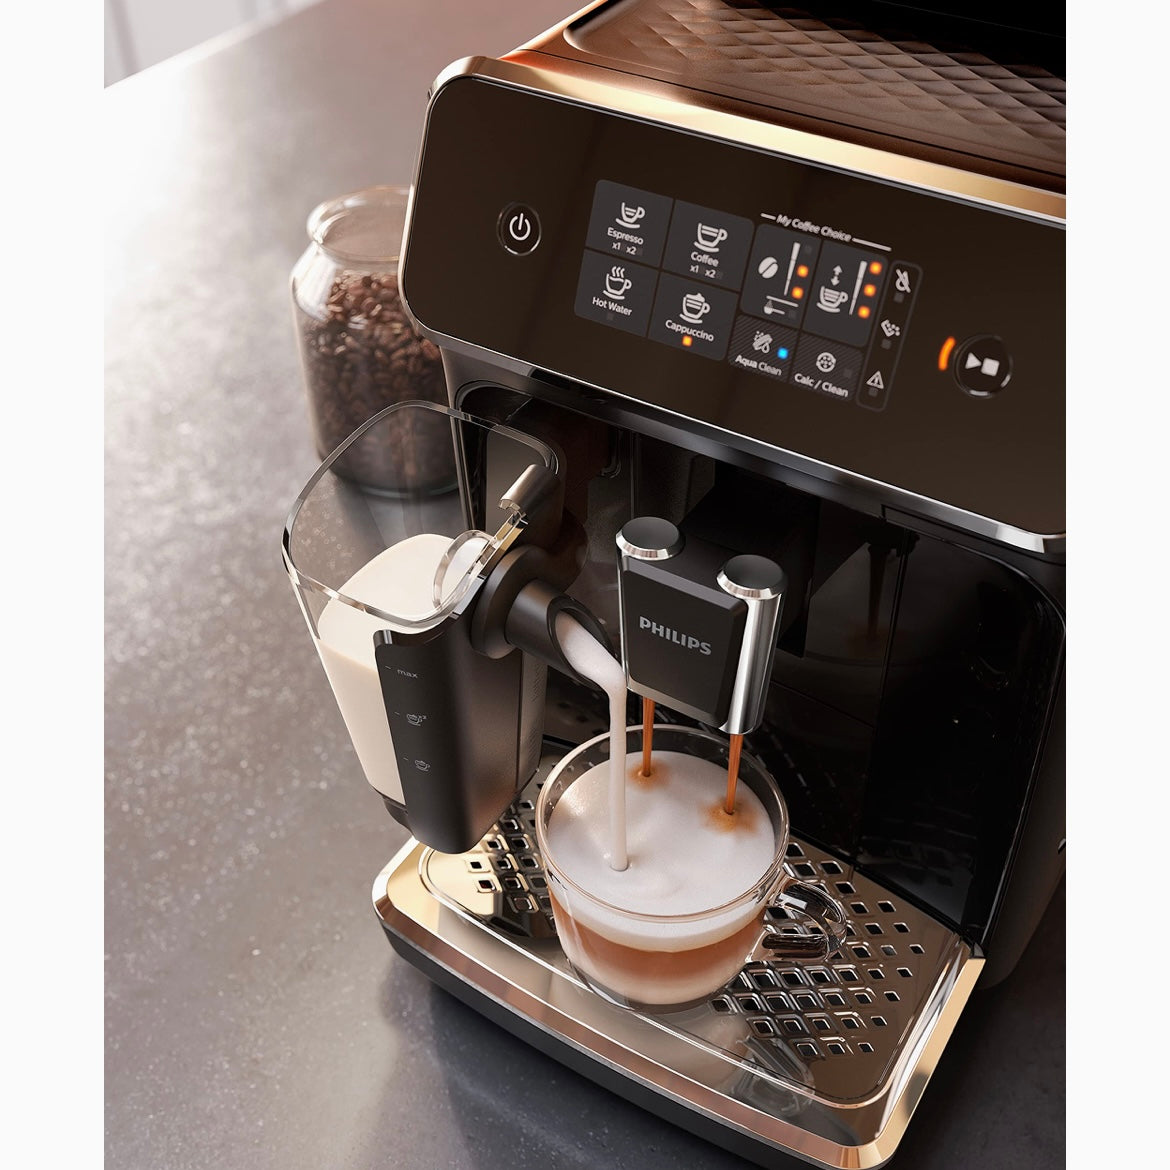 En oferta esta cafetera superautomática Philips para tener un café rápido y  de calidad antes de salir de casa